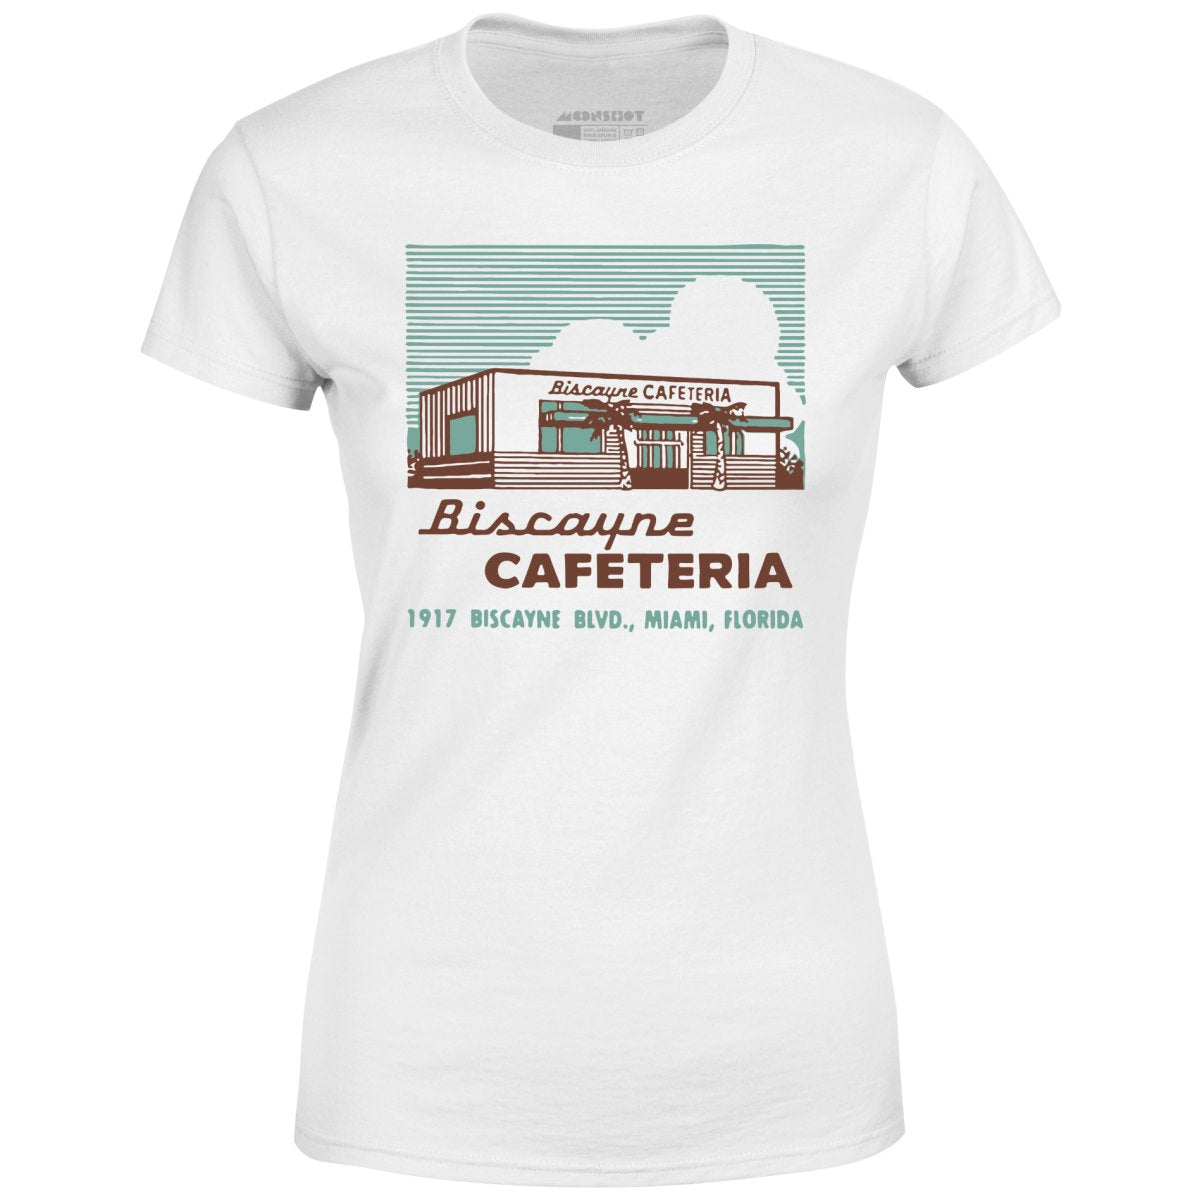 Biscayne Cafeteria - Miami, FL - Vintage Restaurant - Women's T-Shirt